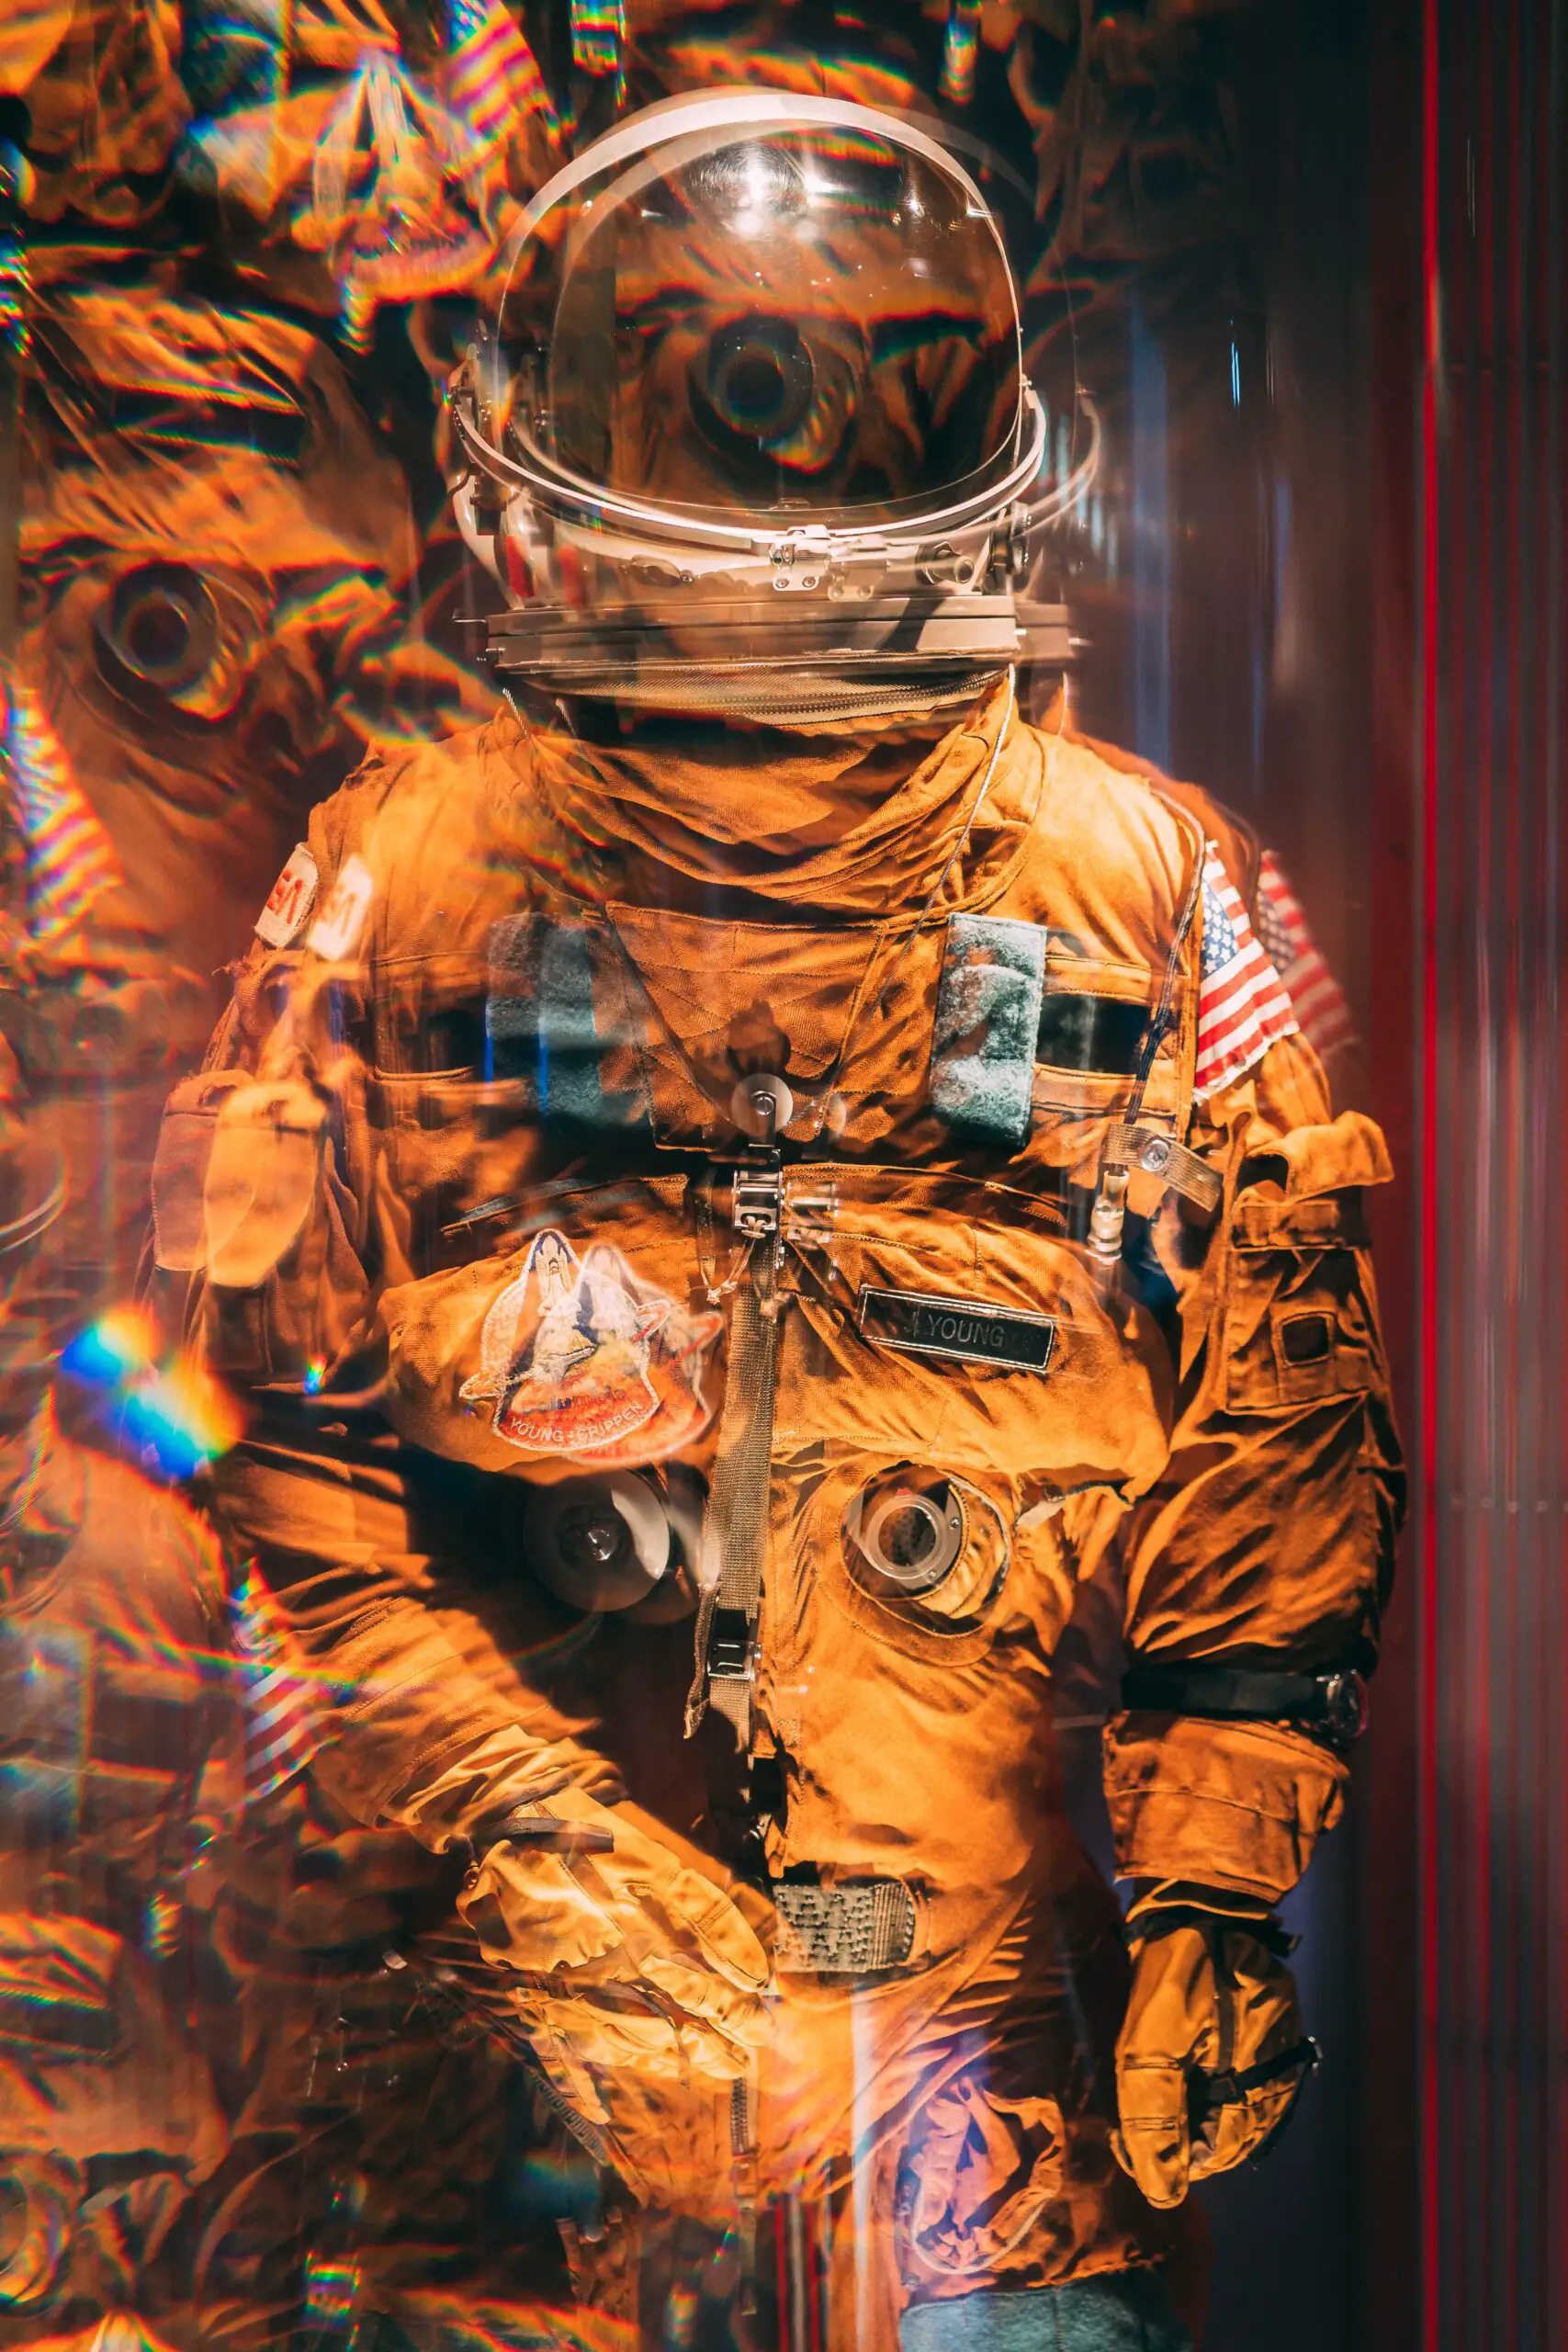 ¿Por qué los astronautas visten trajes blancos en el espacio y naranja cuando regresan a la Tierra?